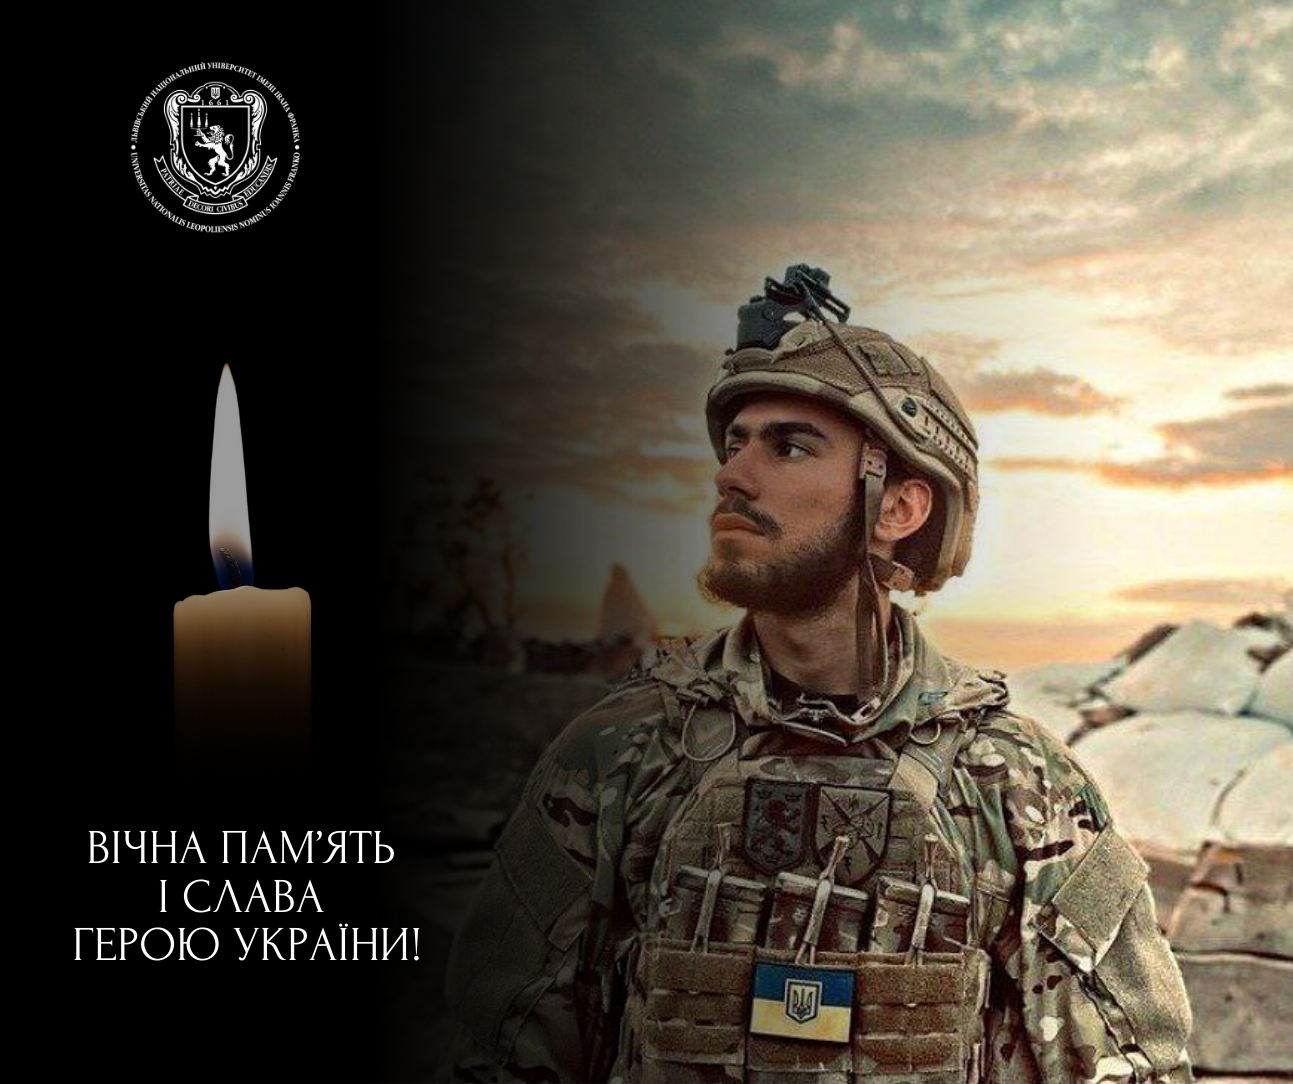 Захищаючи Україну, загинув студент Університету Андрій Прокопчук